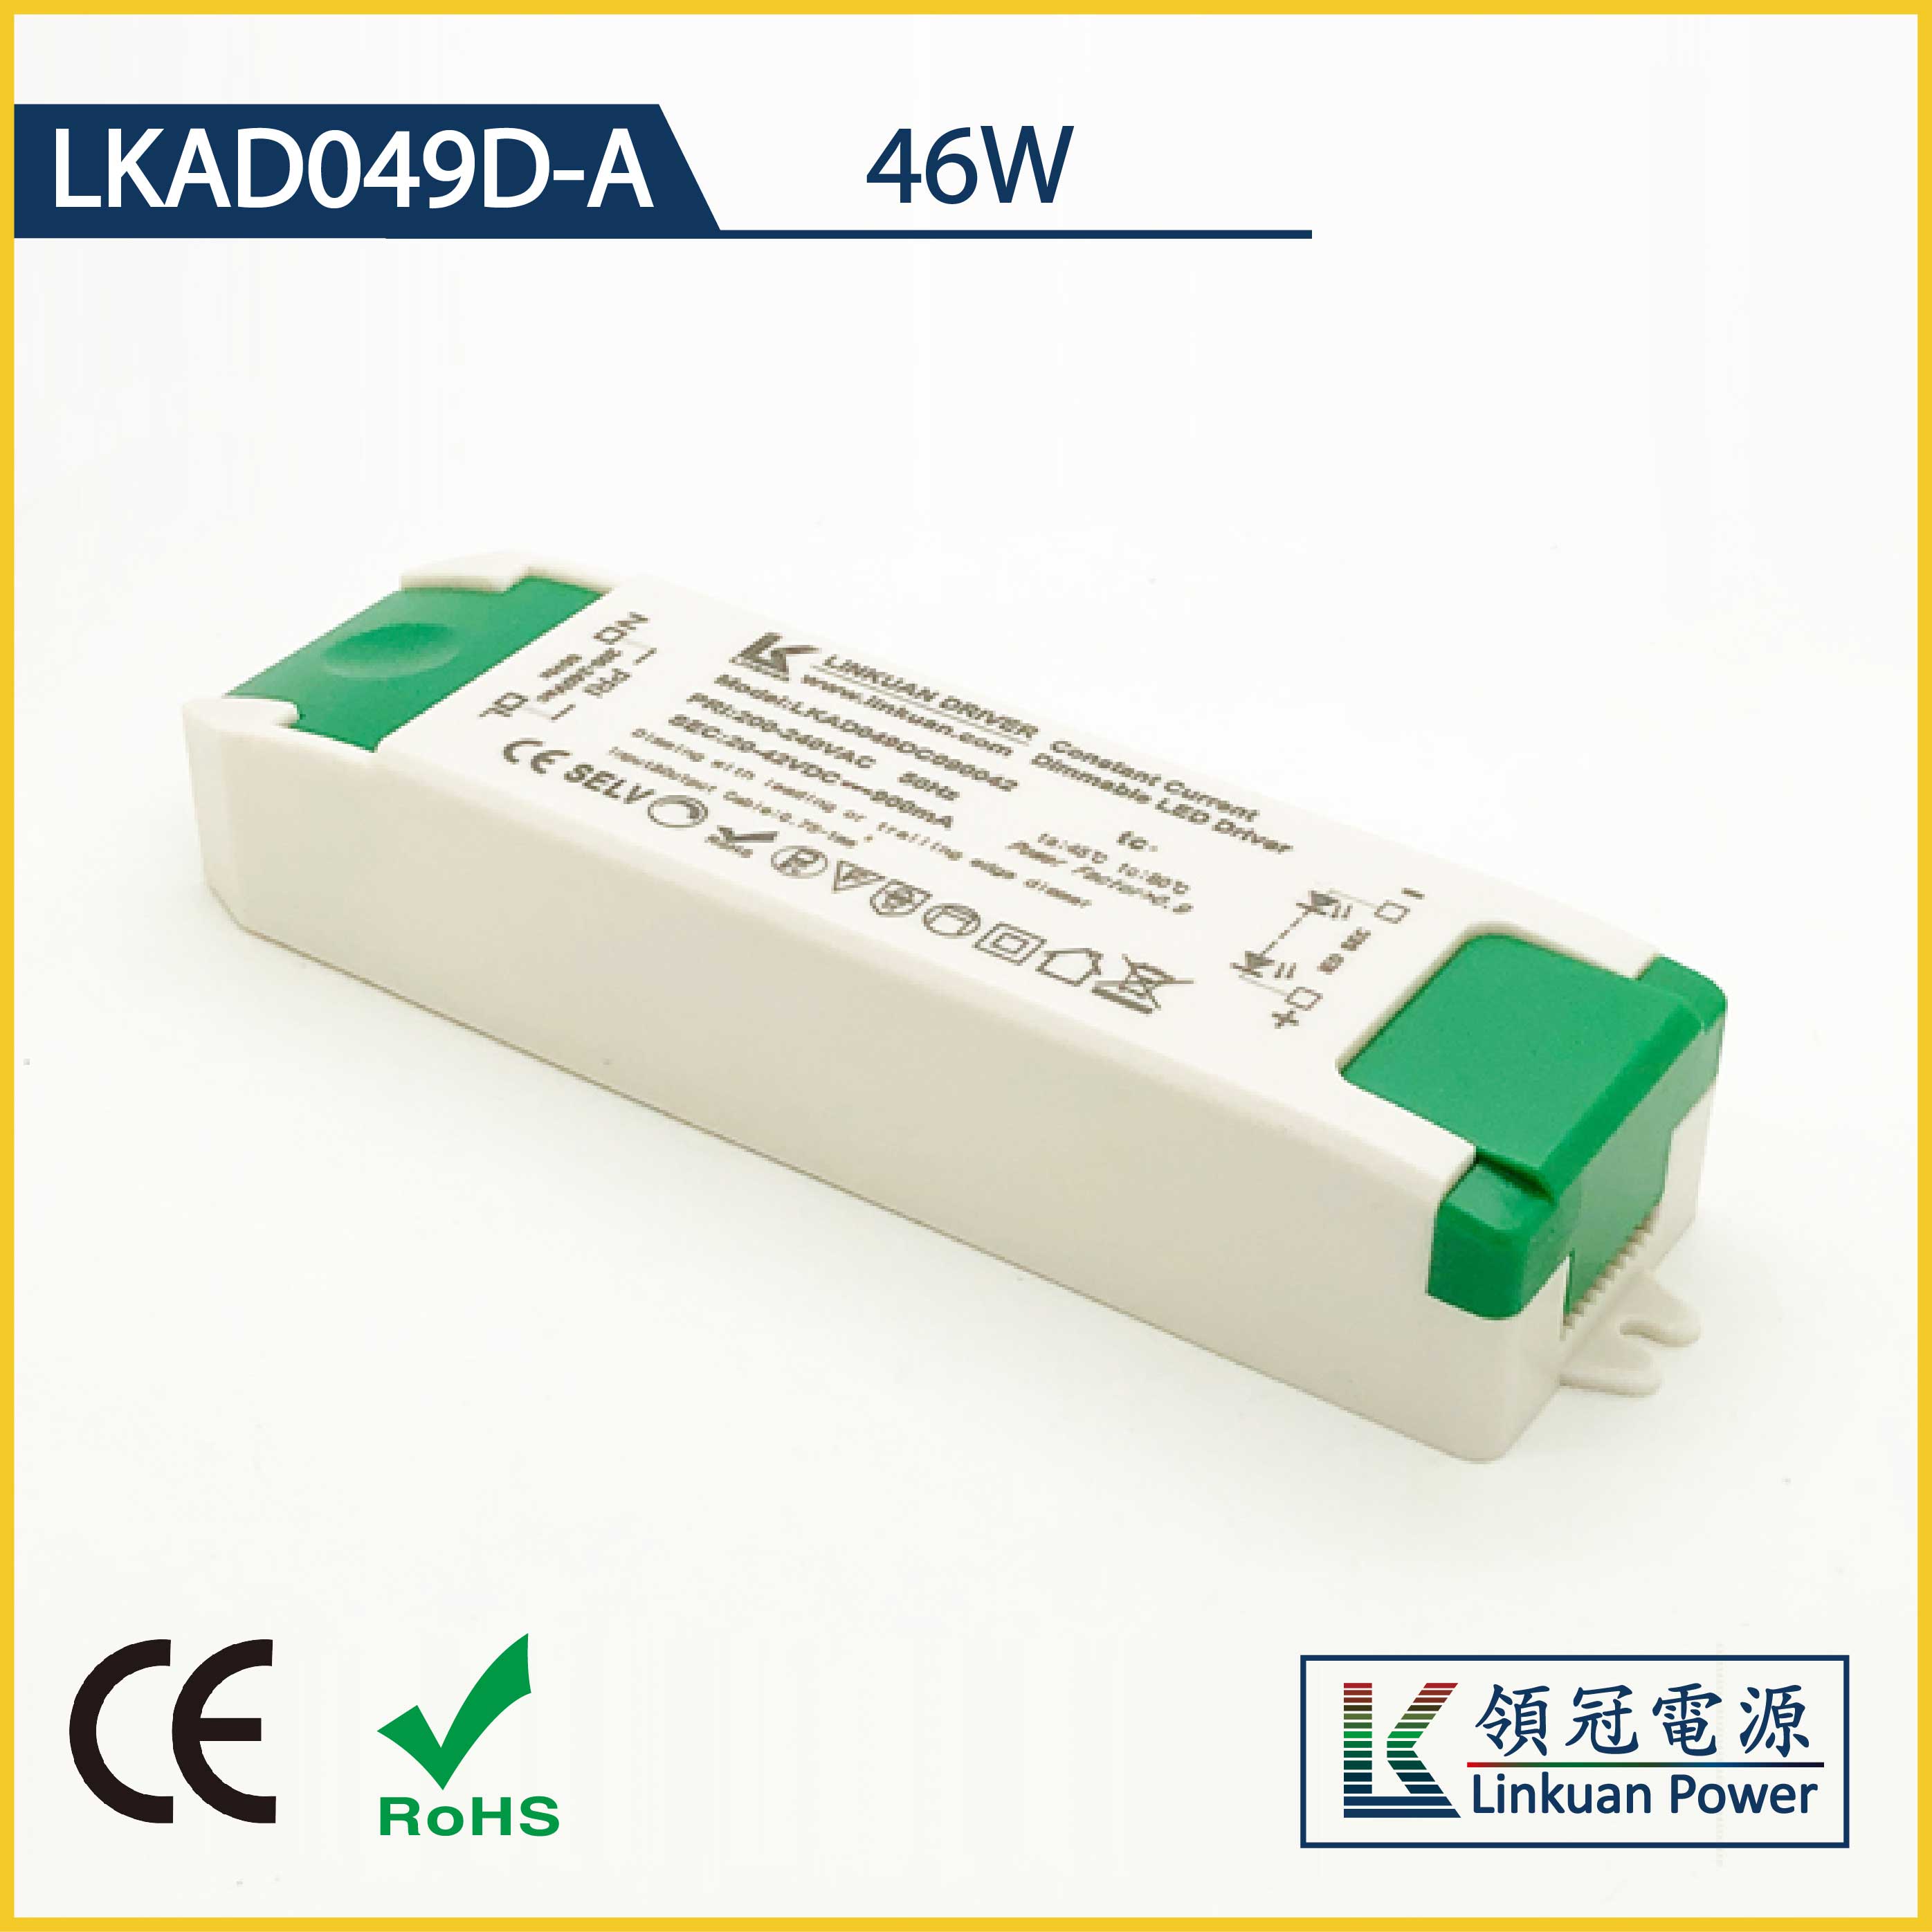 LKAD049D-A 46W 5-42V 1100mA CCT Adjusting LED drivers